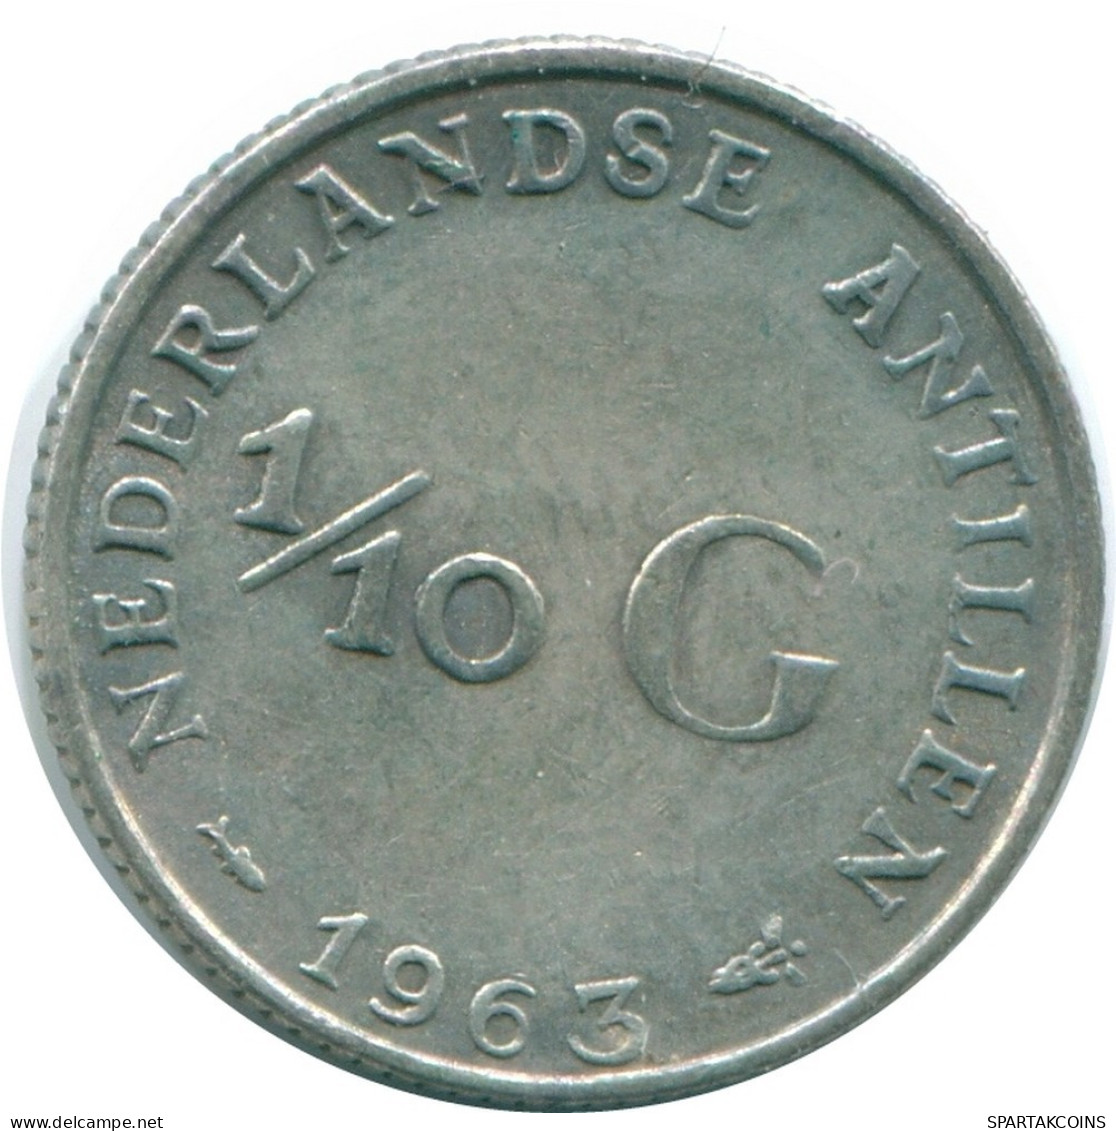 1/10 GULDEN 1963 NIEDERLÄNDISCHE ANTILLEN SILBER Koloniale Münze #NL12488.3.D.A - Antilles Néerlandaises